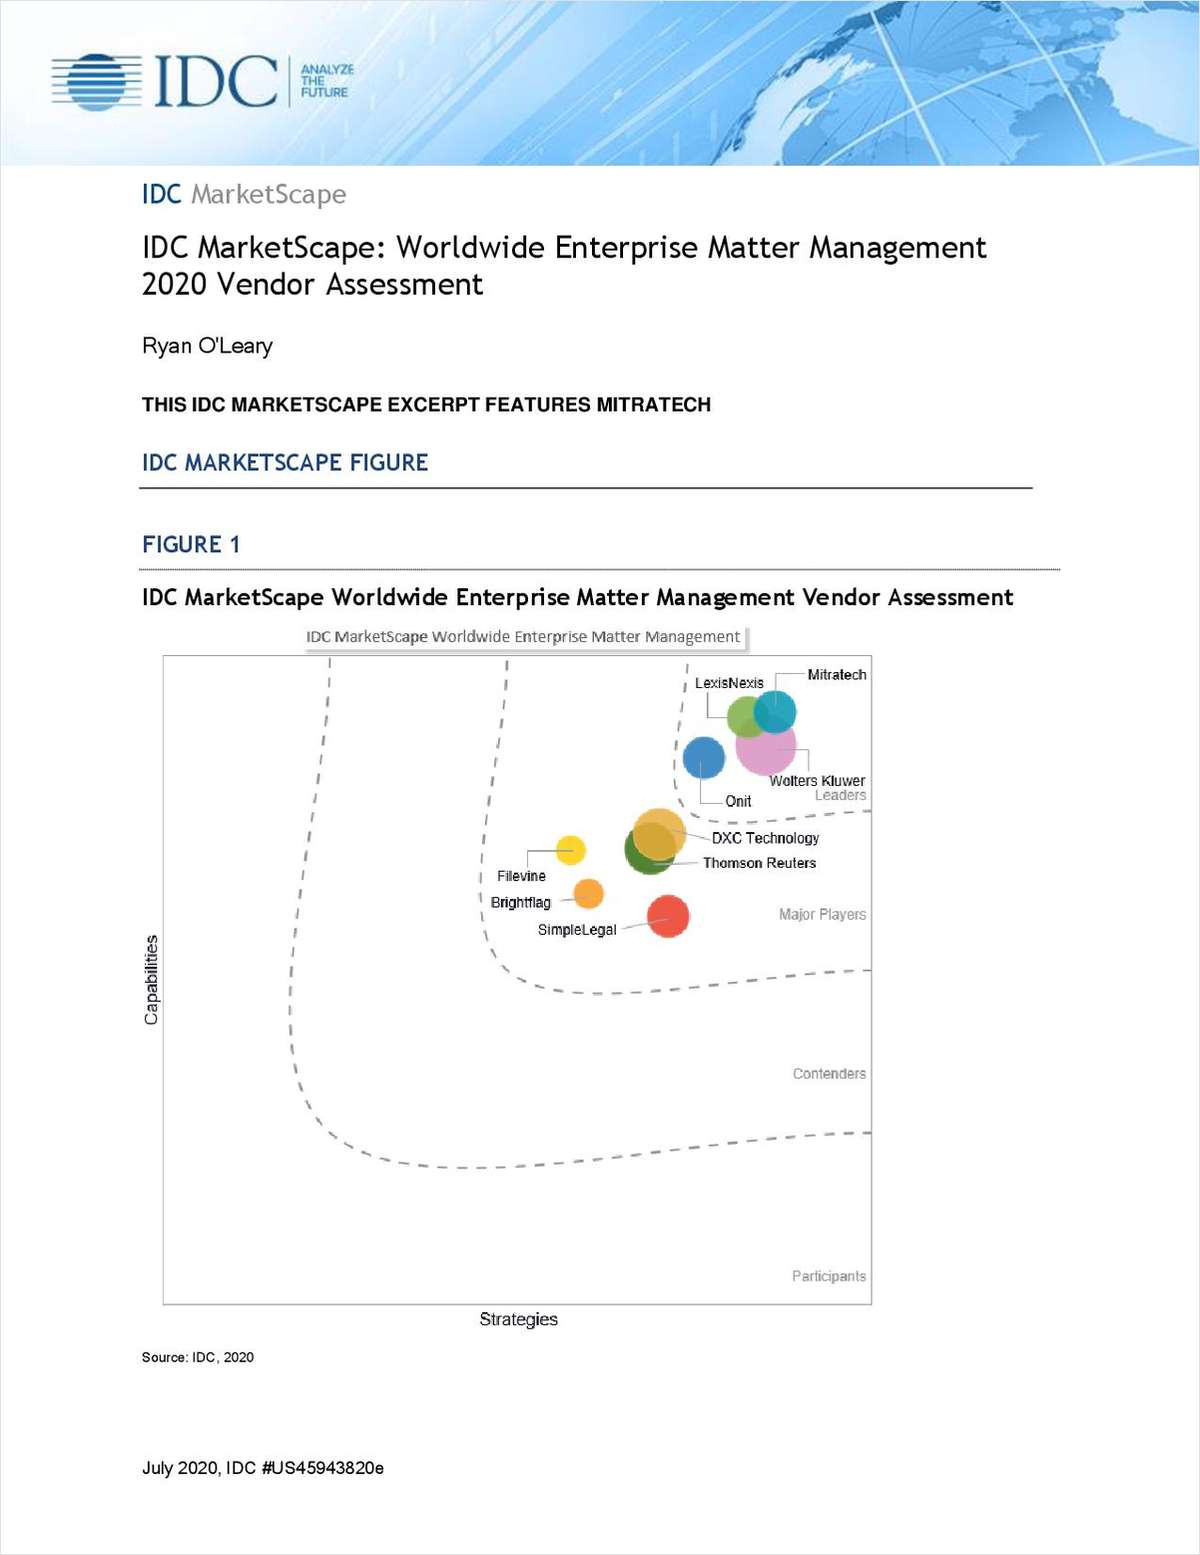 IDC MarketScape: Worldwide Enterprise Matter Management 2020 Vendor Assessment